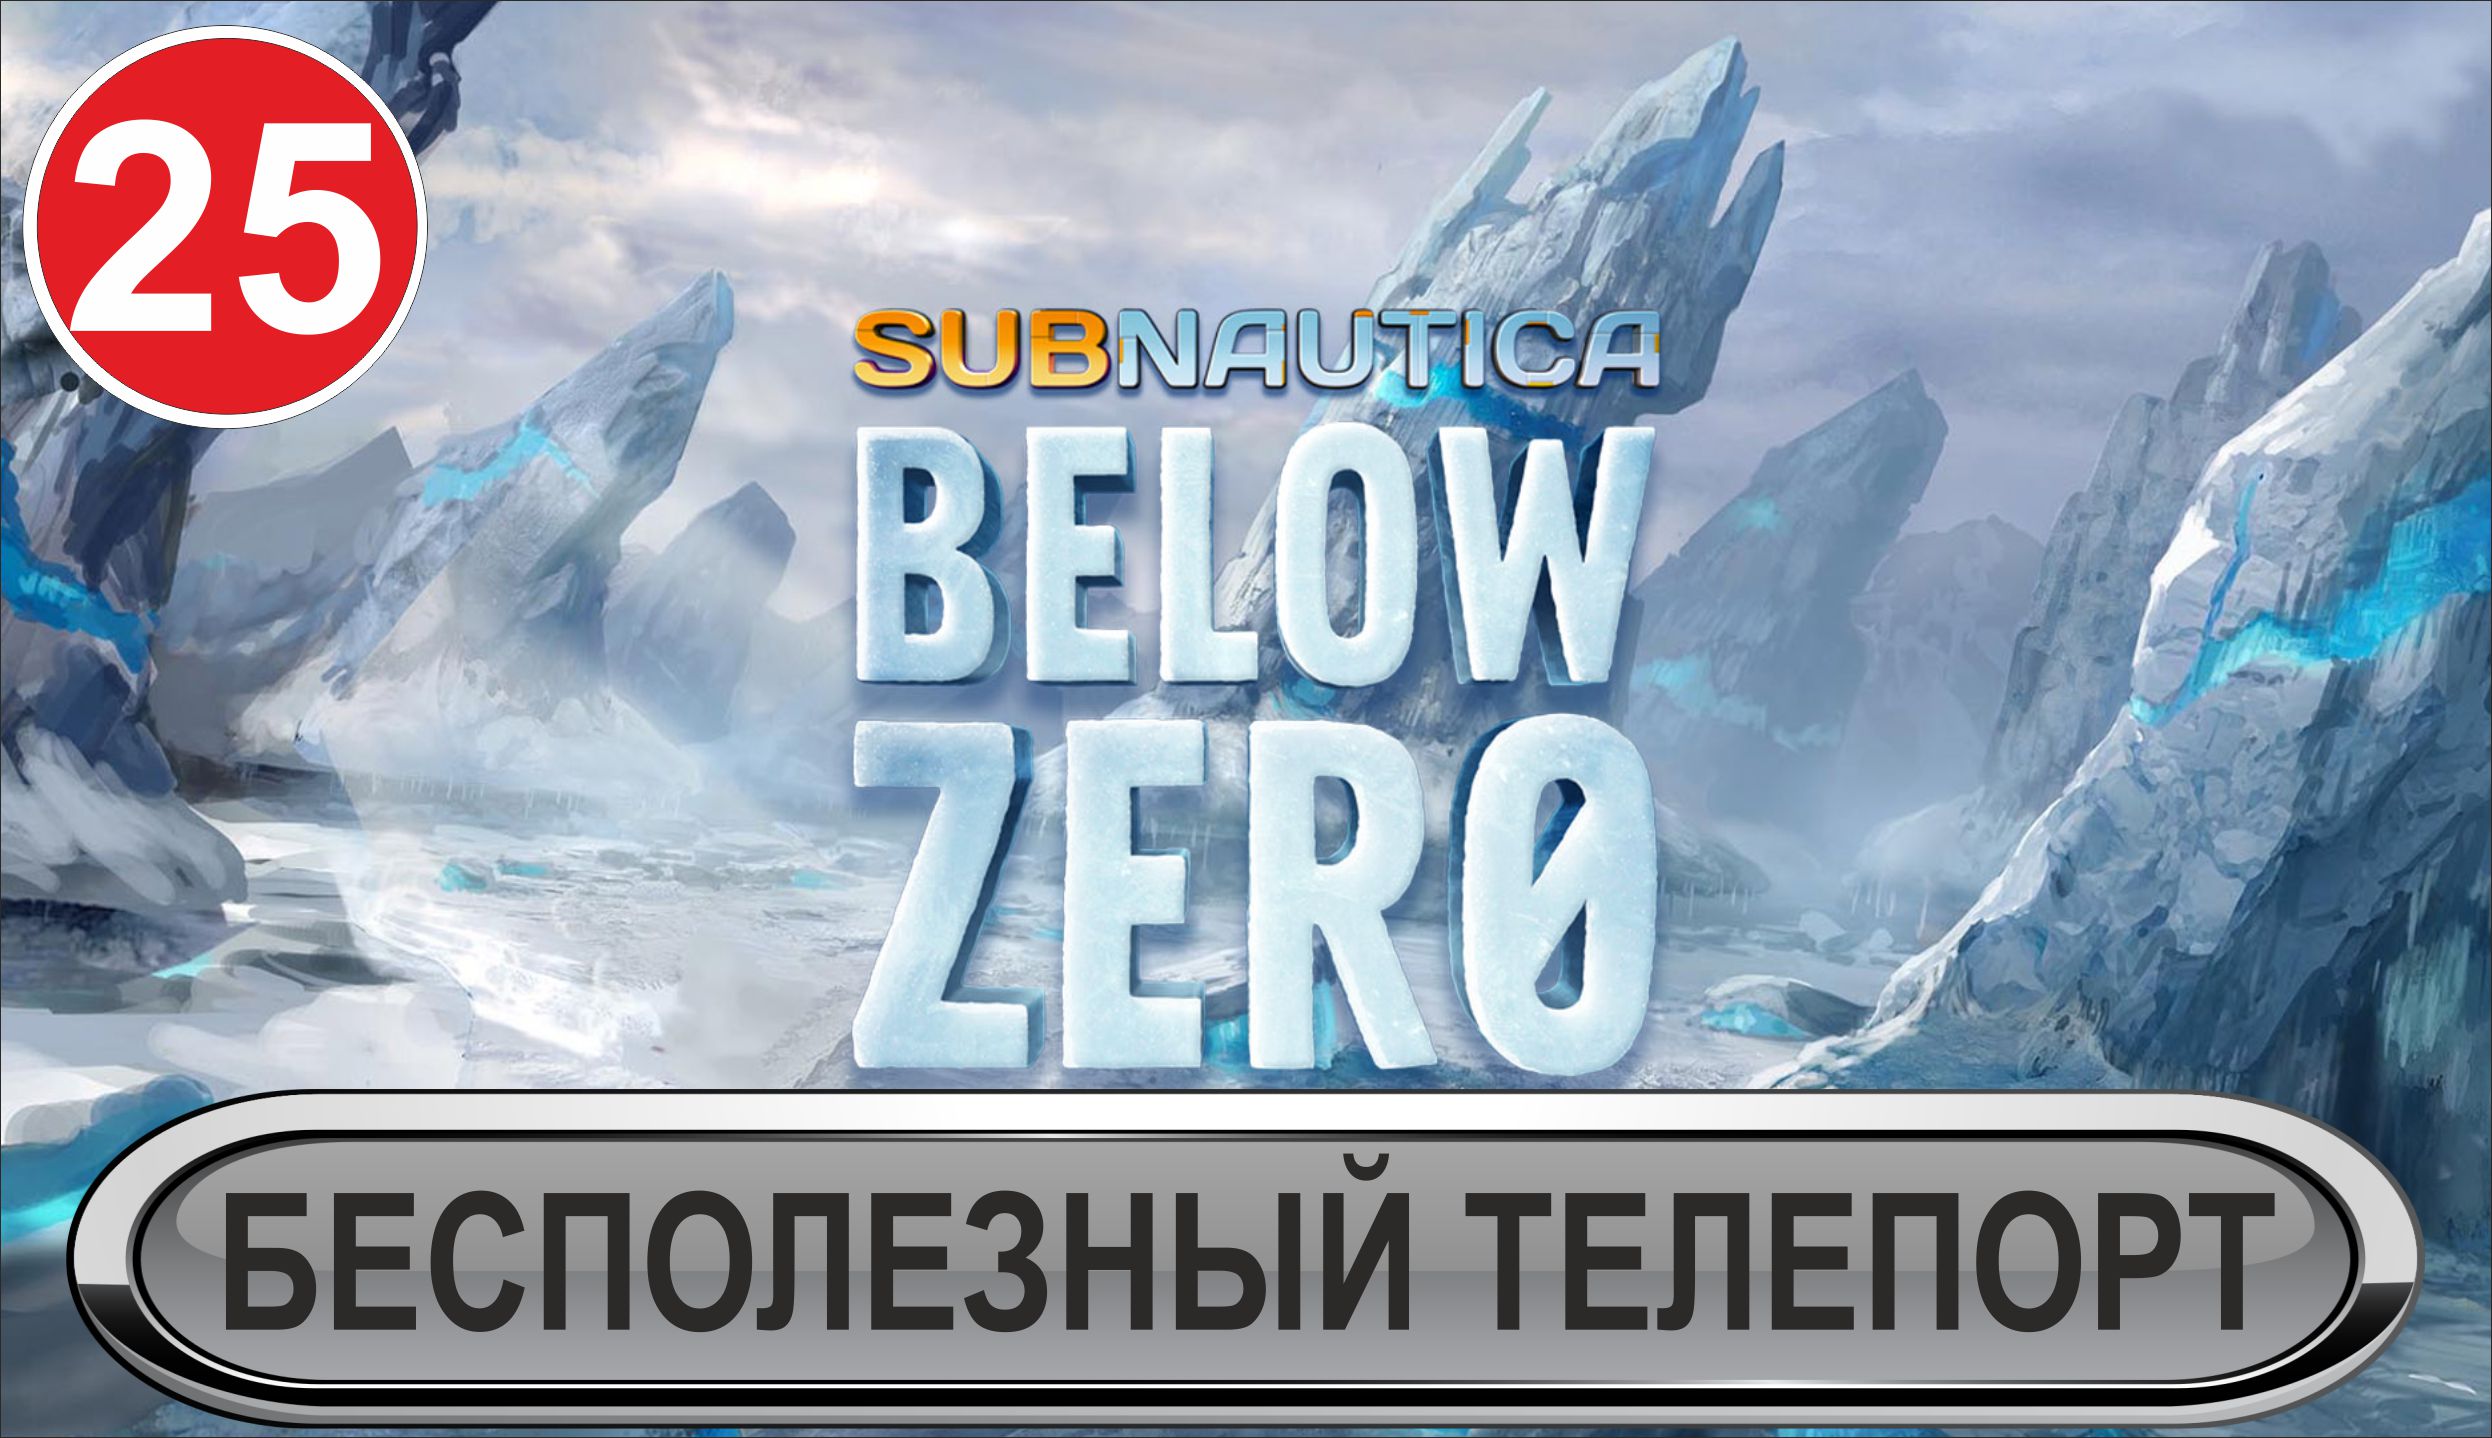 Subnautica: Below Zero - Бесполезный телепорт